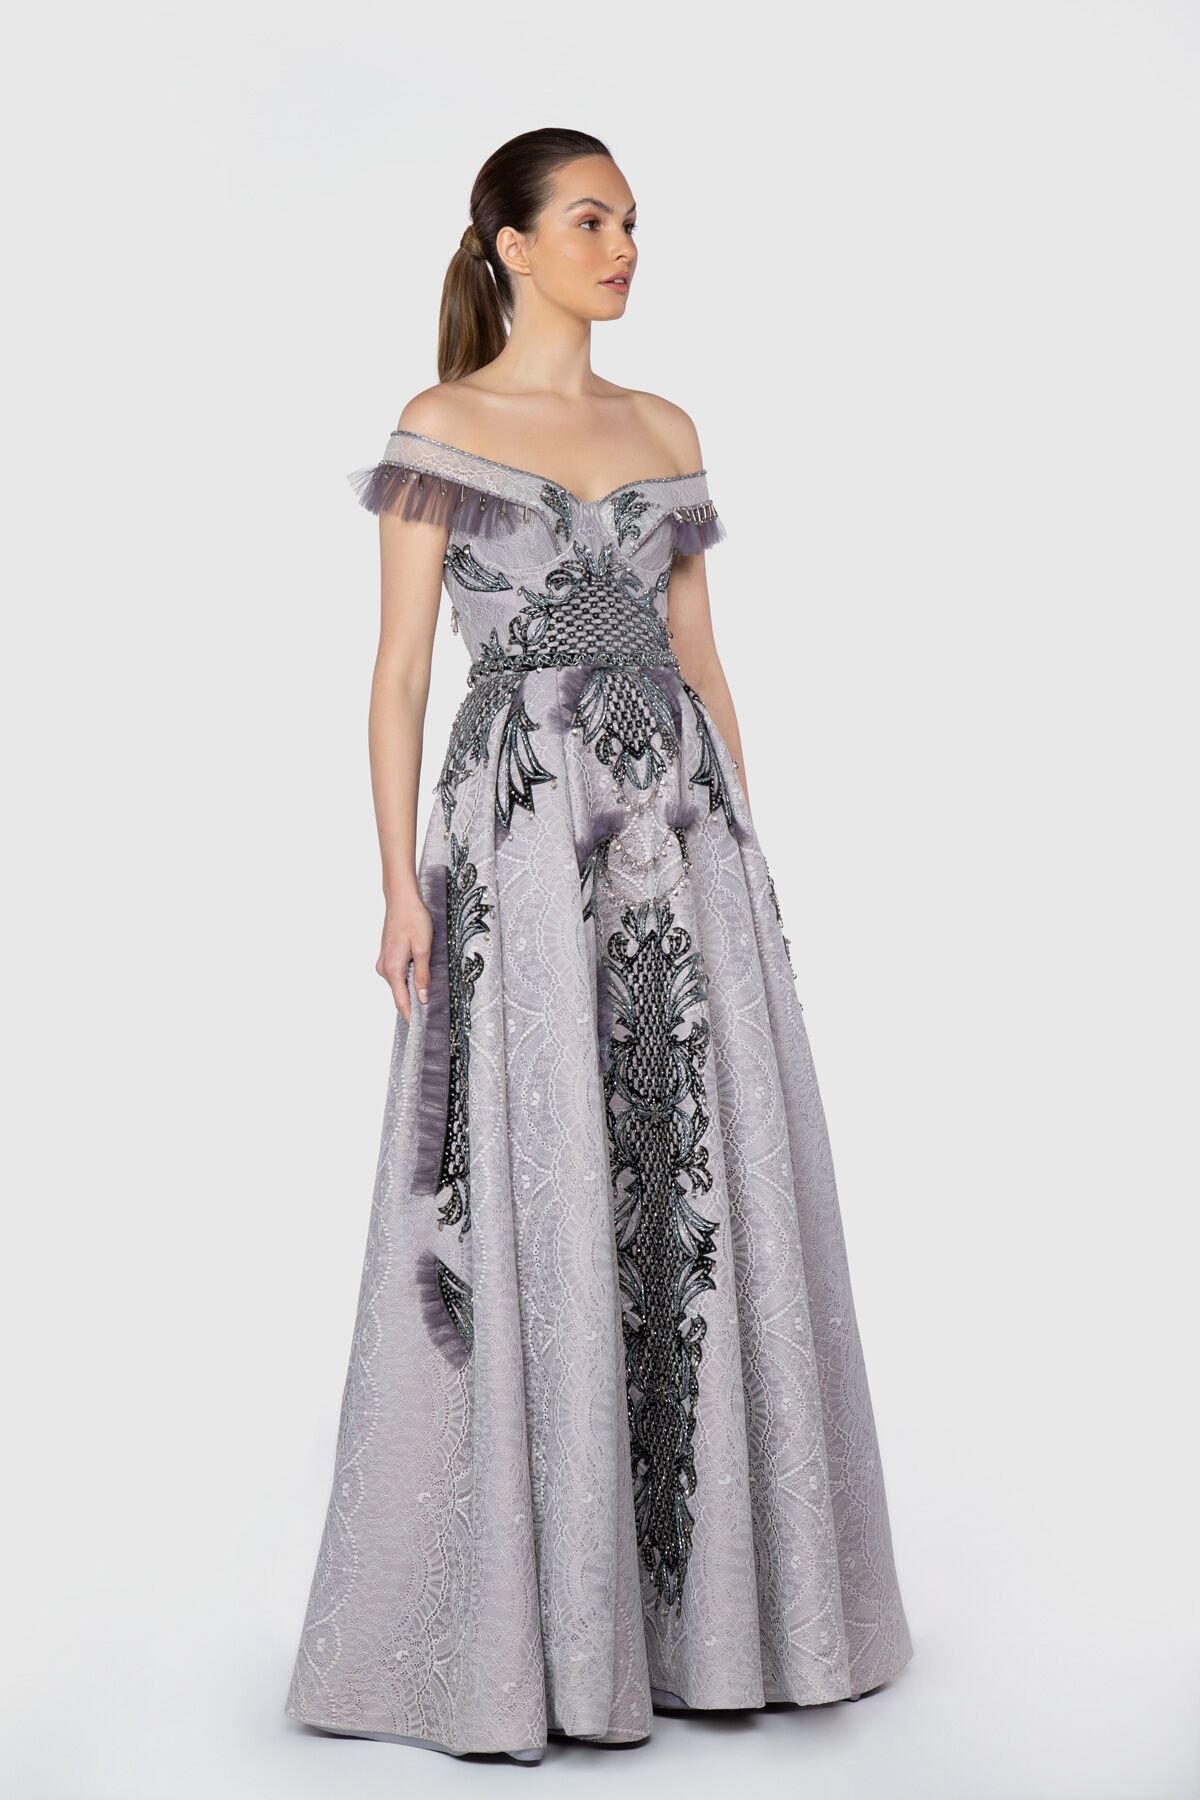  Zeynep Tosun Embroidered Detailed Off Shoulder Gray Design Dress